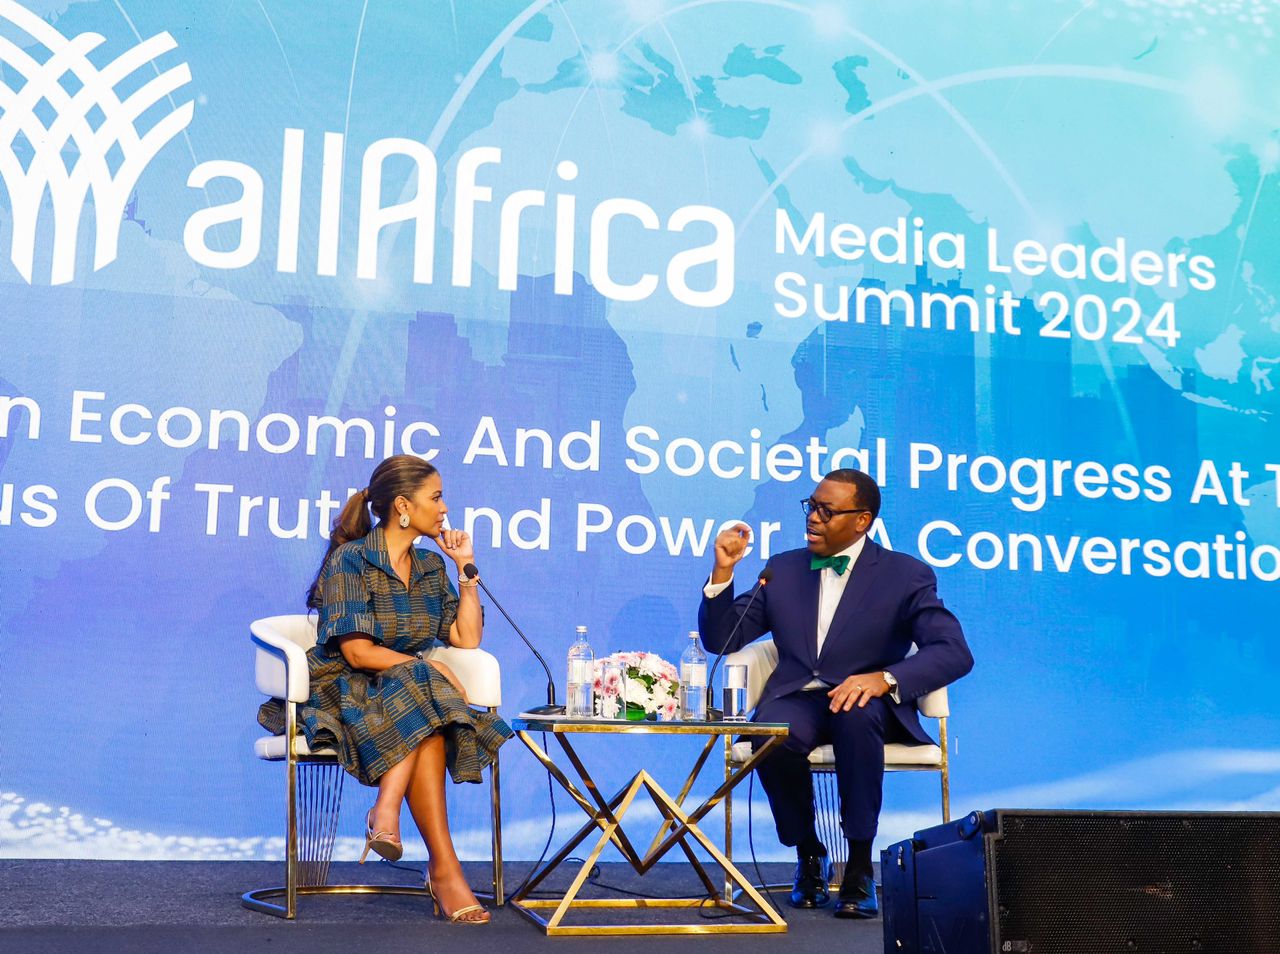 Sommet des dirigeants des médias d'Afrique : Le président de la Bad se dit conscient de l’importance de l’information et de son impact